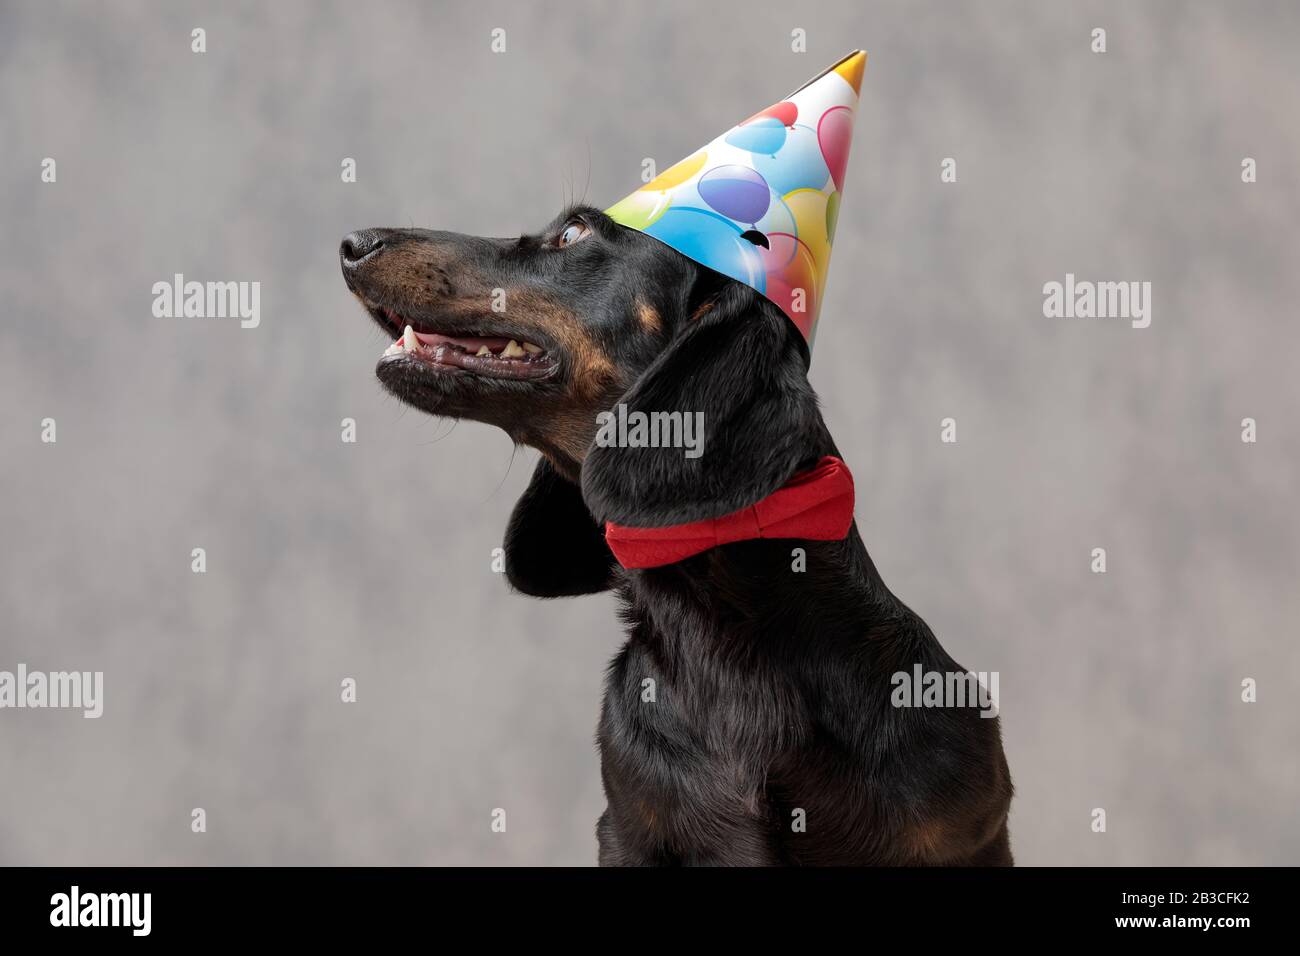 Nahaufnahme eines hübschen Teckel-Welpen-Hundes mit Geburtstagshut, der mit großen Augen beiseite blickt und vor grauem Studiohintergrund aufdringlich ist Stockfoto